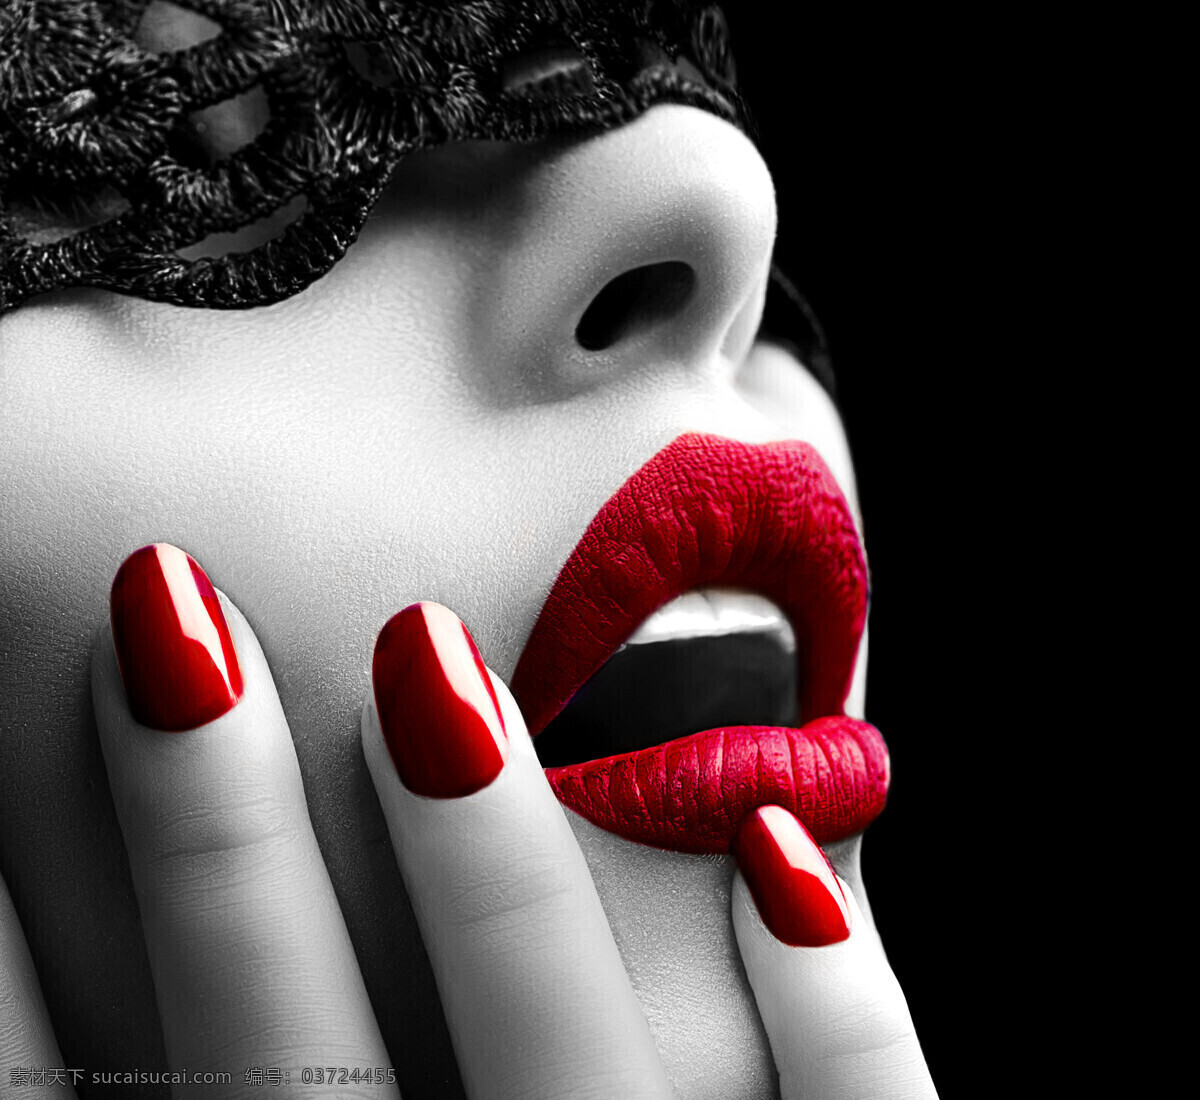 红唇 性感美女 红指甲 性感 女人 美女 外国女人 美女模特 美女图片 人物图片